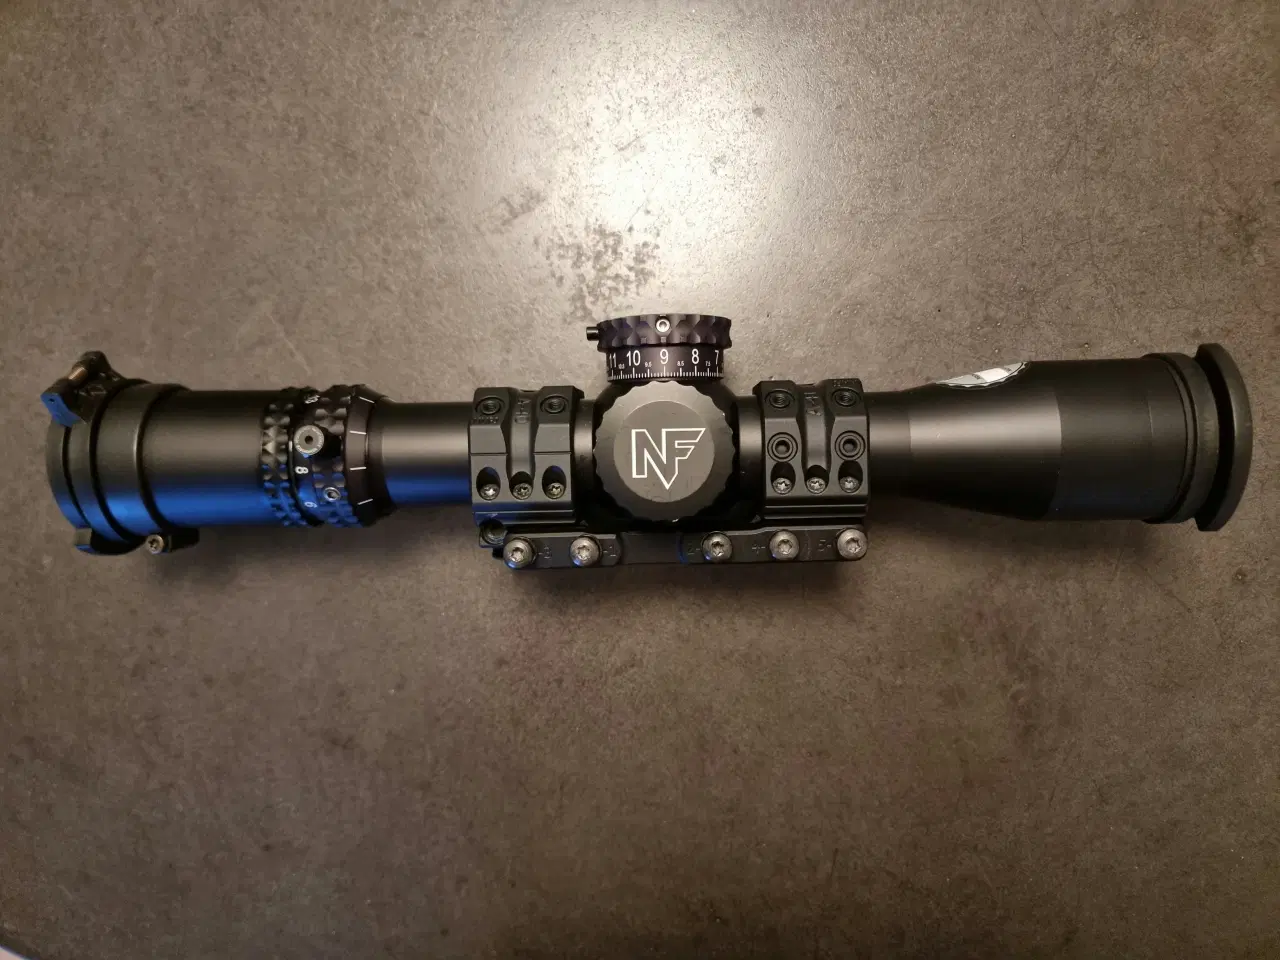 Billede 1 - Nightforce ATACR 4-16x42mm F1 med Spuhr Montage